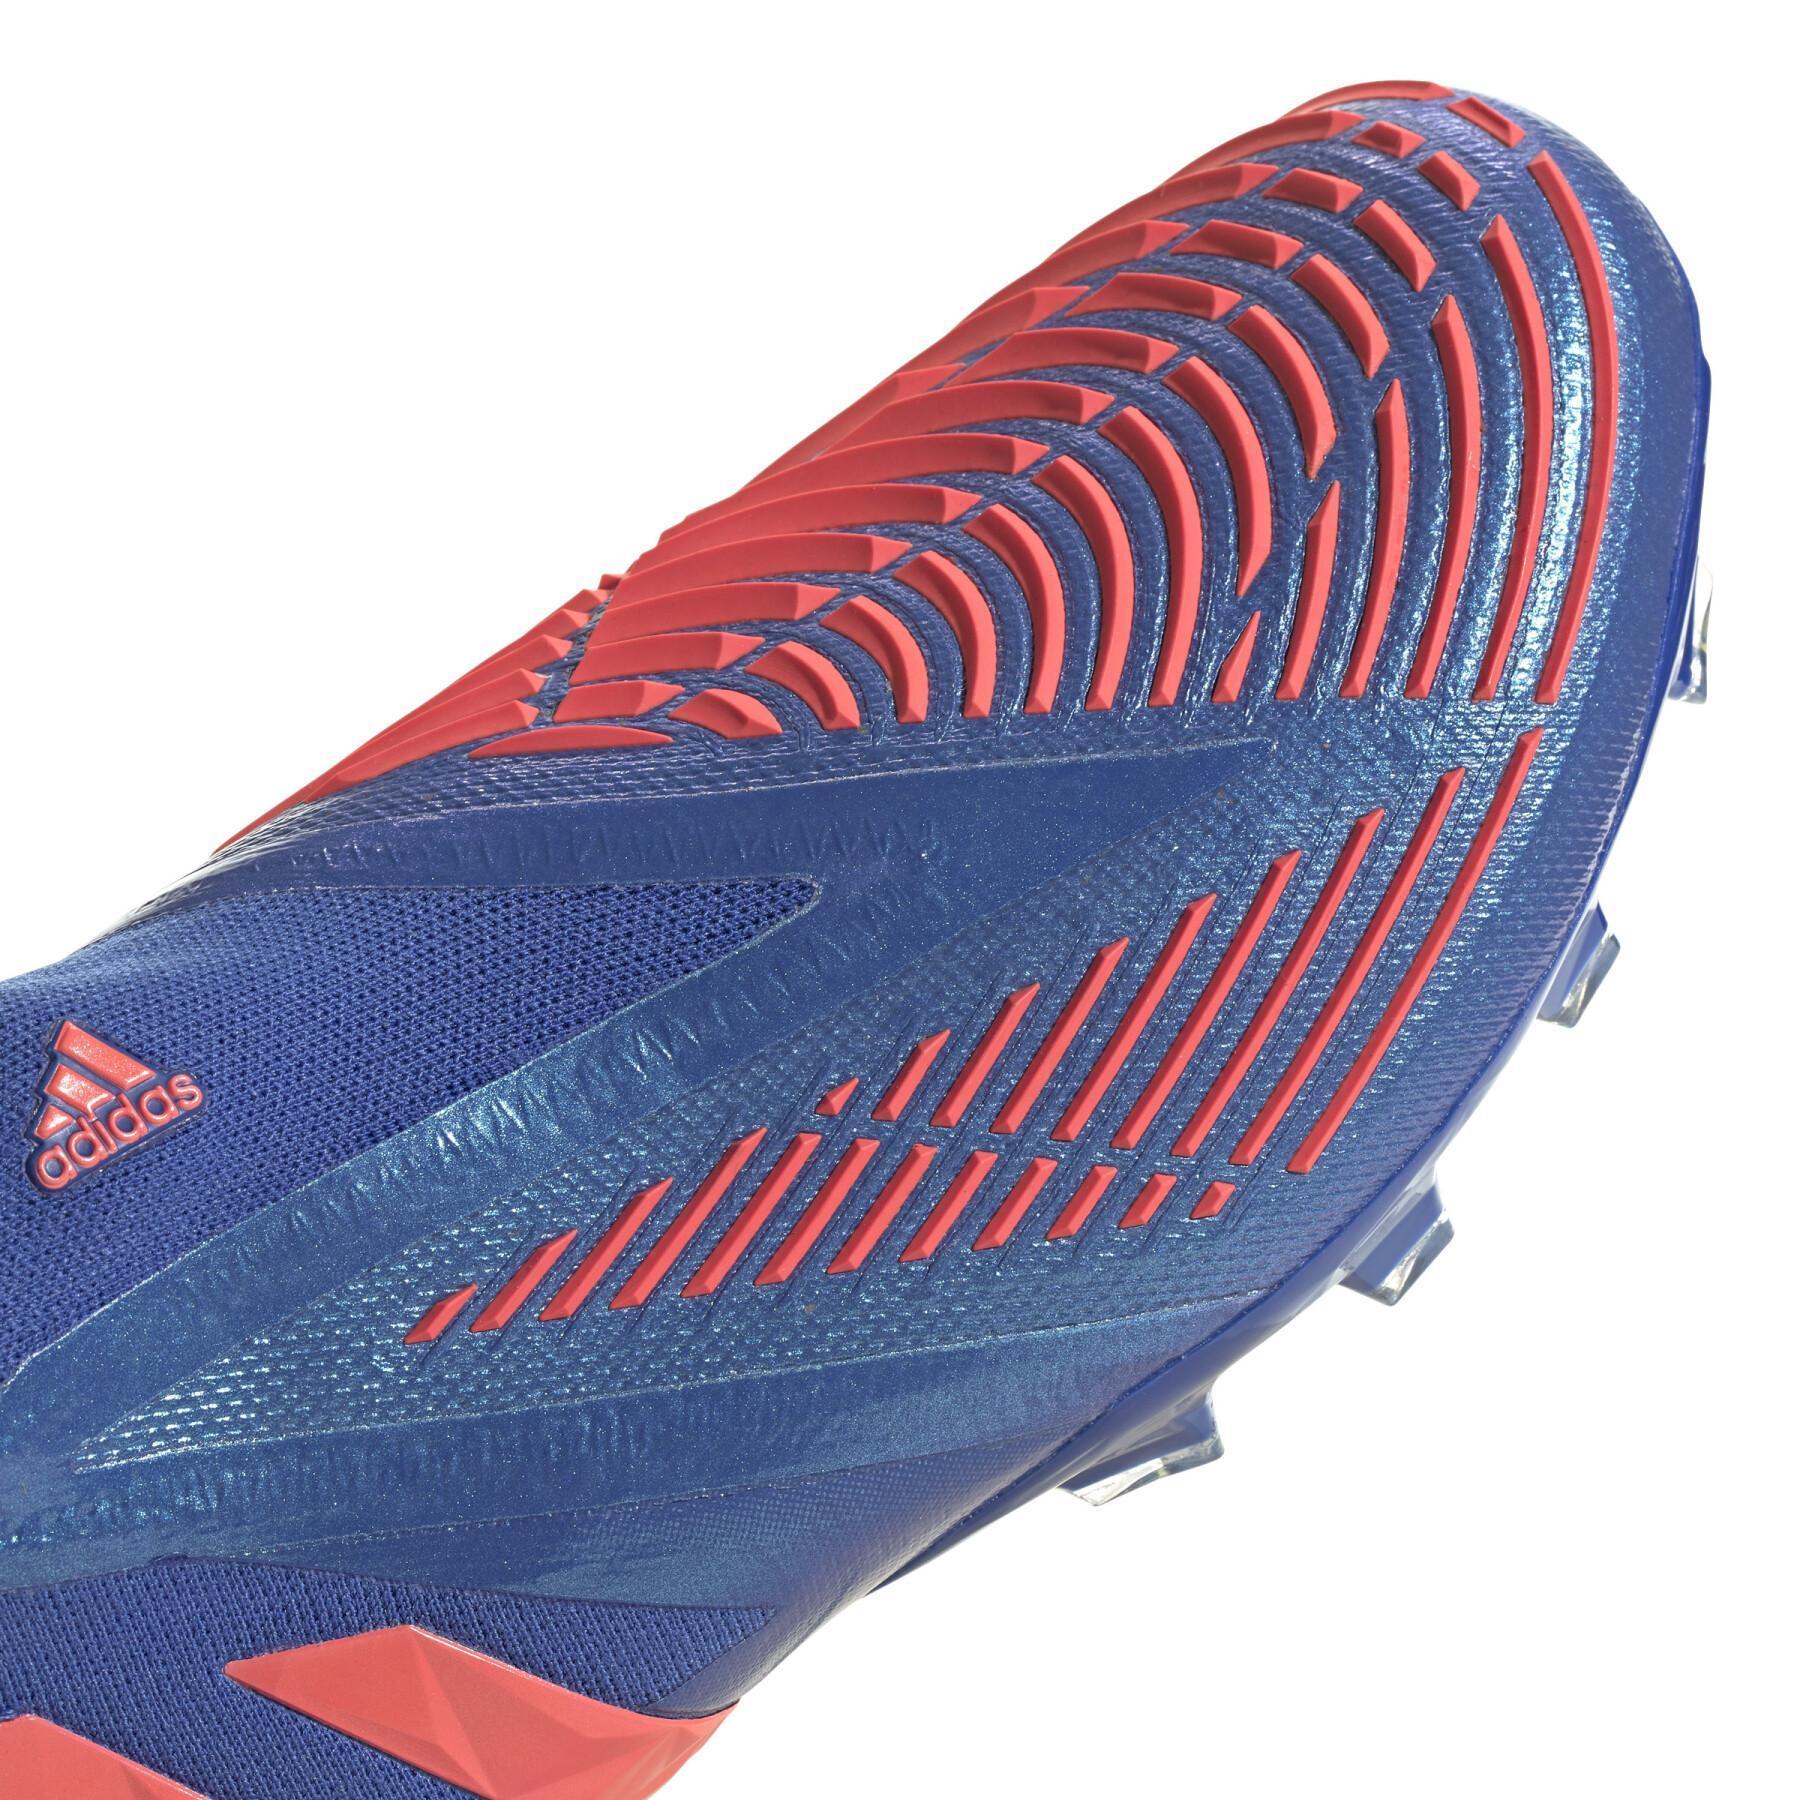 Chaussures de football adidas Predator Edge+ AG - Sapphire Edge Pack